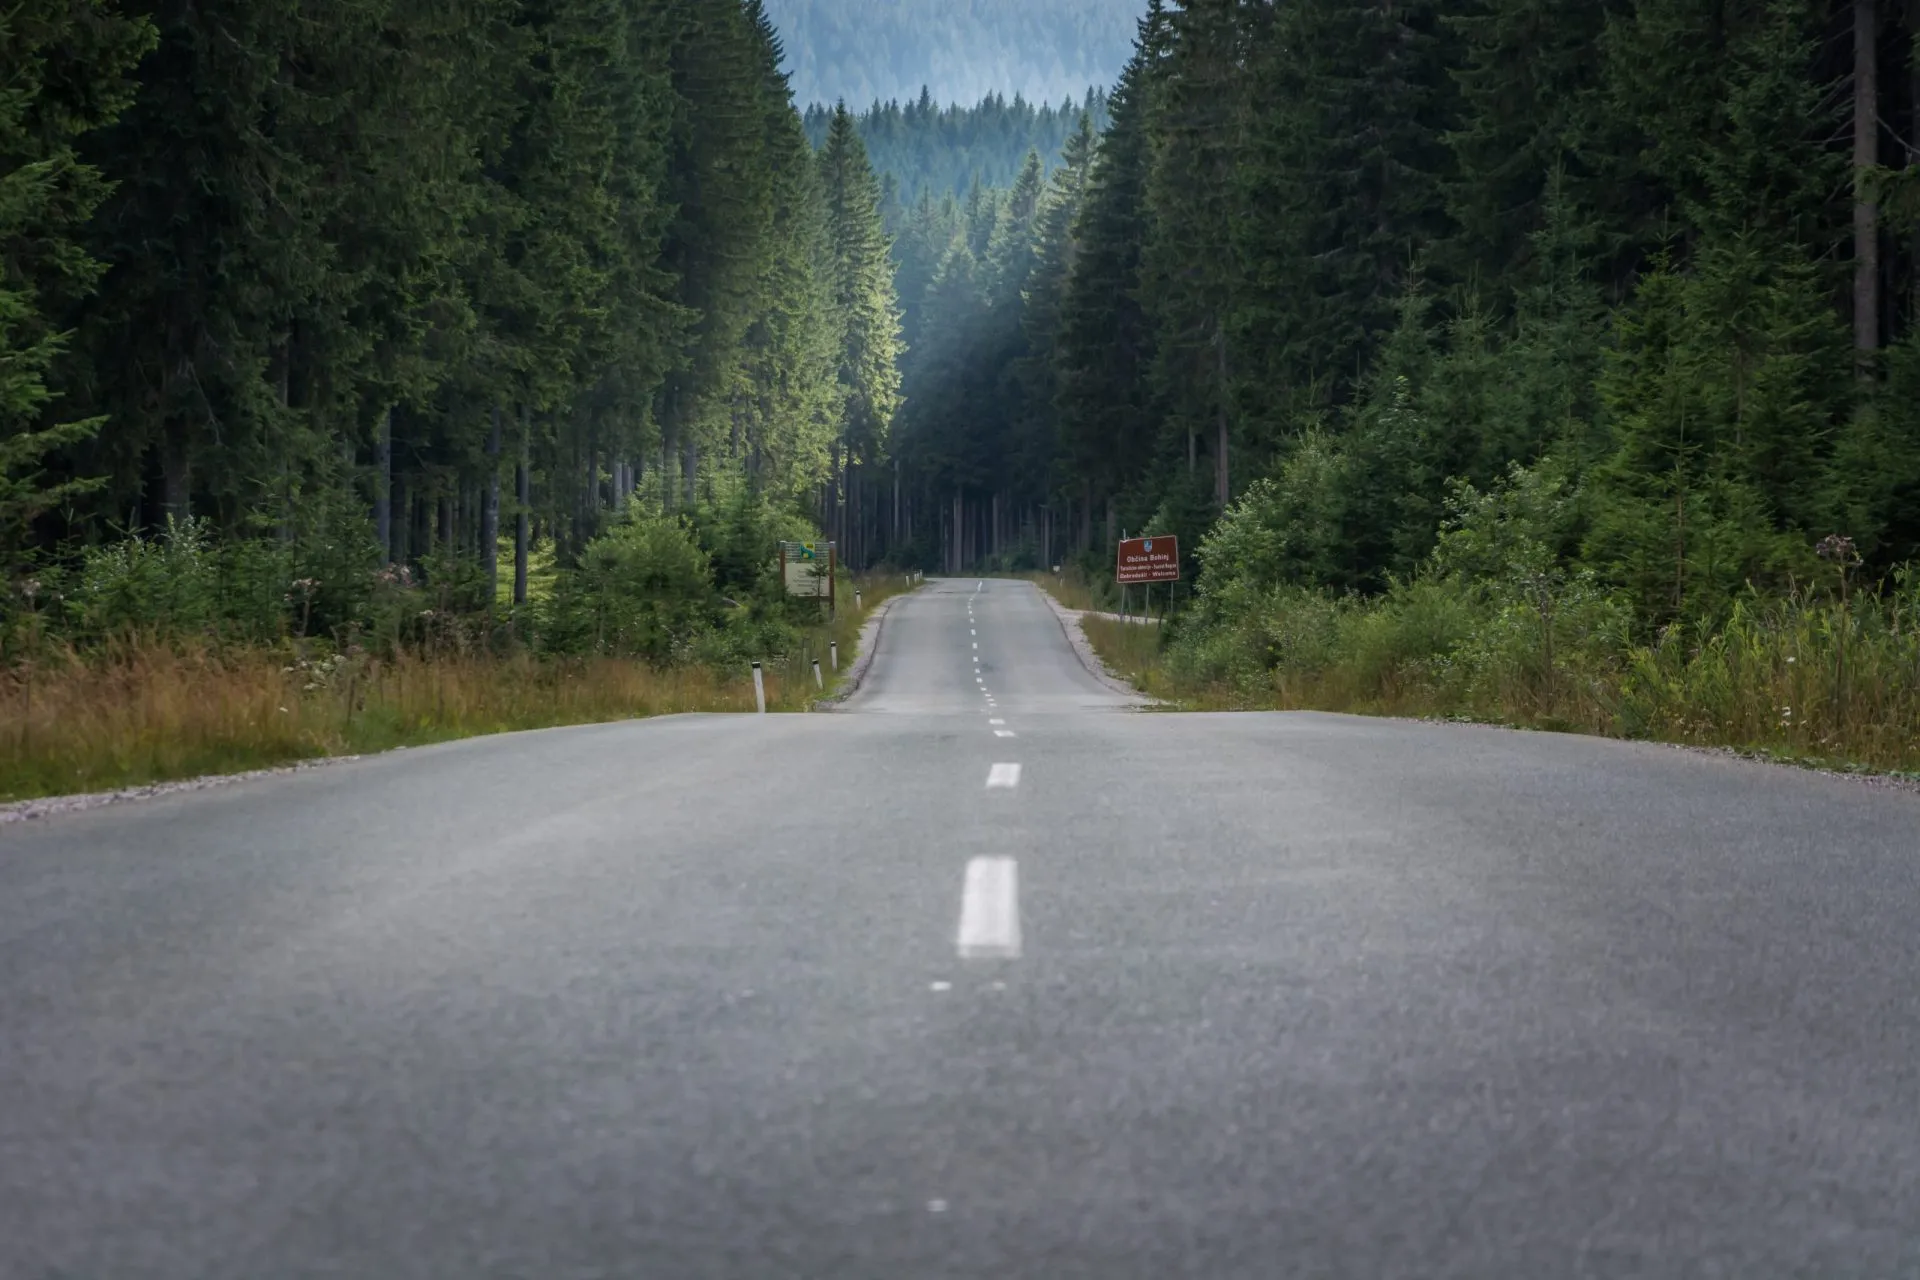 lige tom lang asfalt landevej mellem gran skov træer fantastisk skovlandskab pokljuka plateau slovenien i sommersæsonen lav vinkel langt skud stockpack adobe stock skaleret